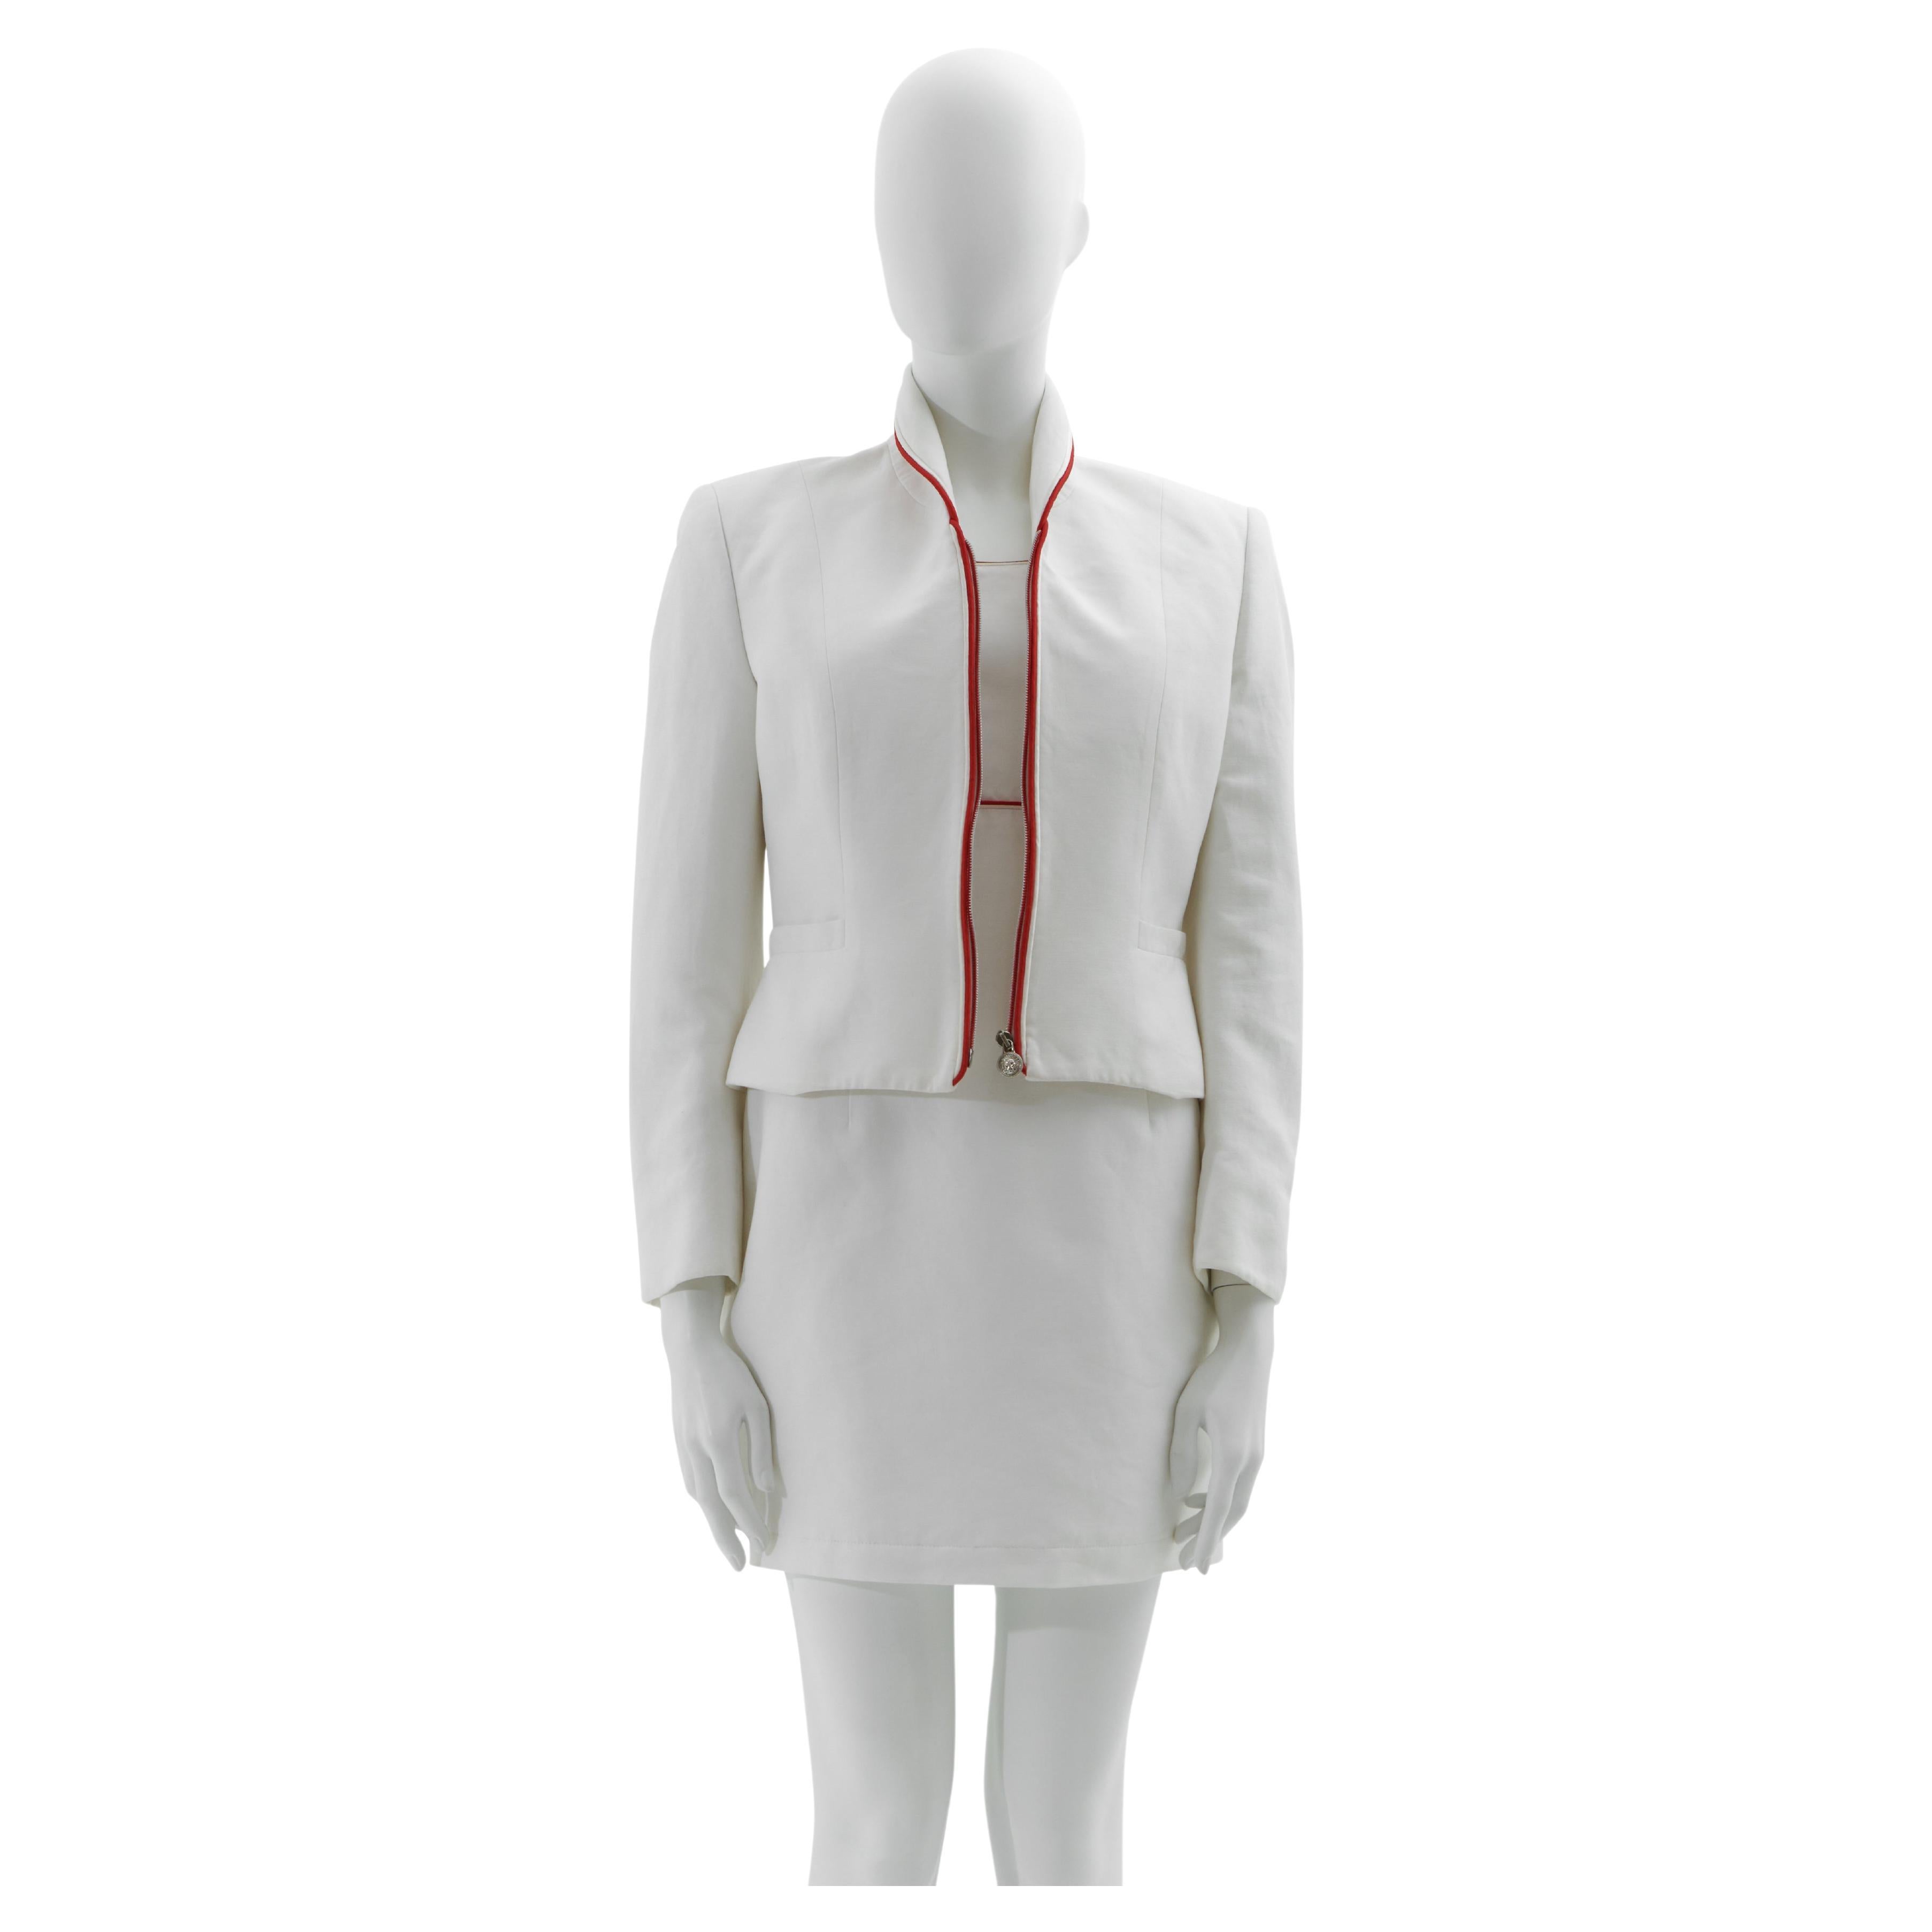 Versus by Gianni Versace Début des années 1990 Ensemble robe et veste en coton blanc